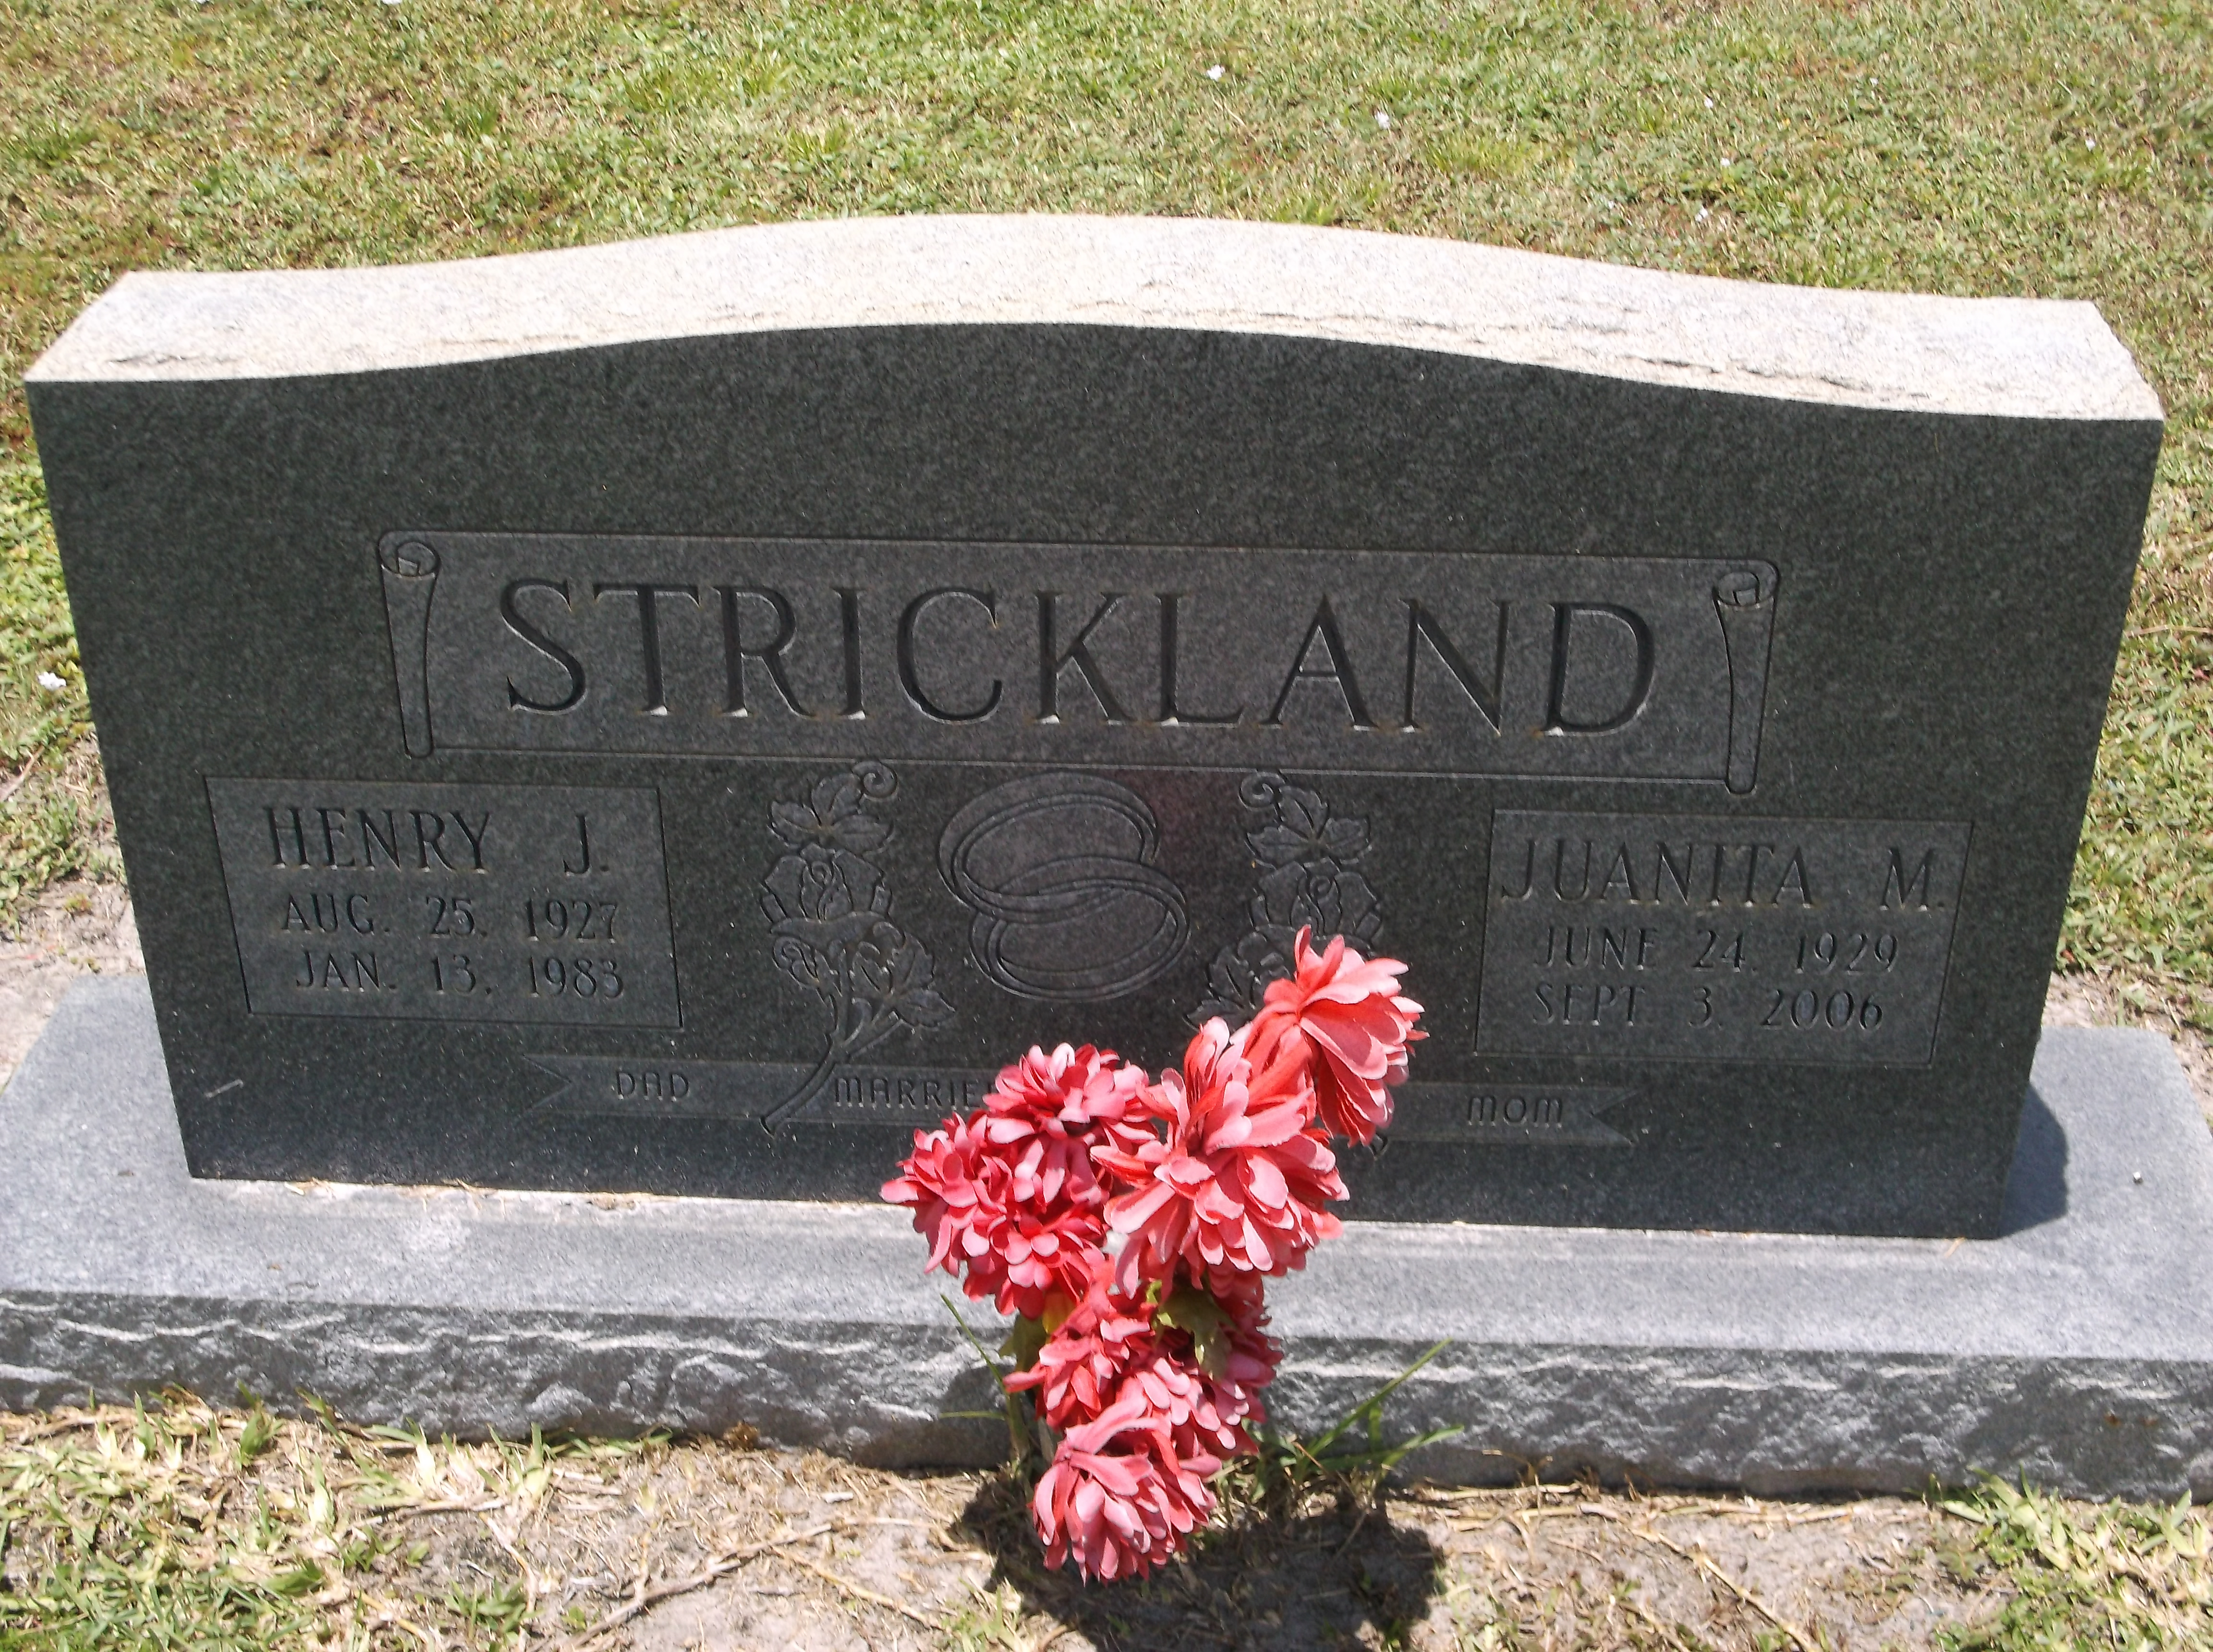 Henry J Strickland